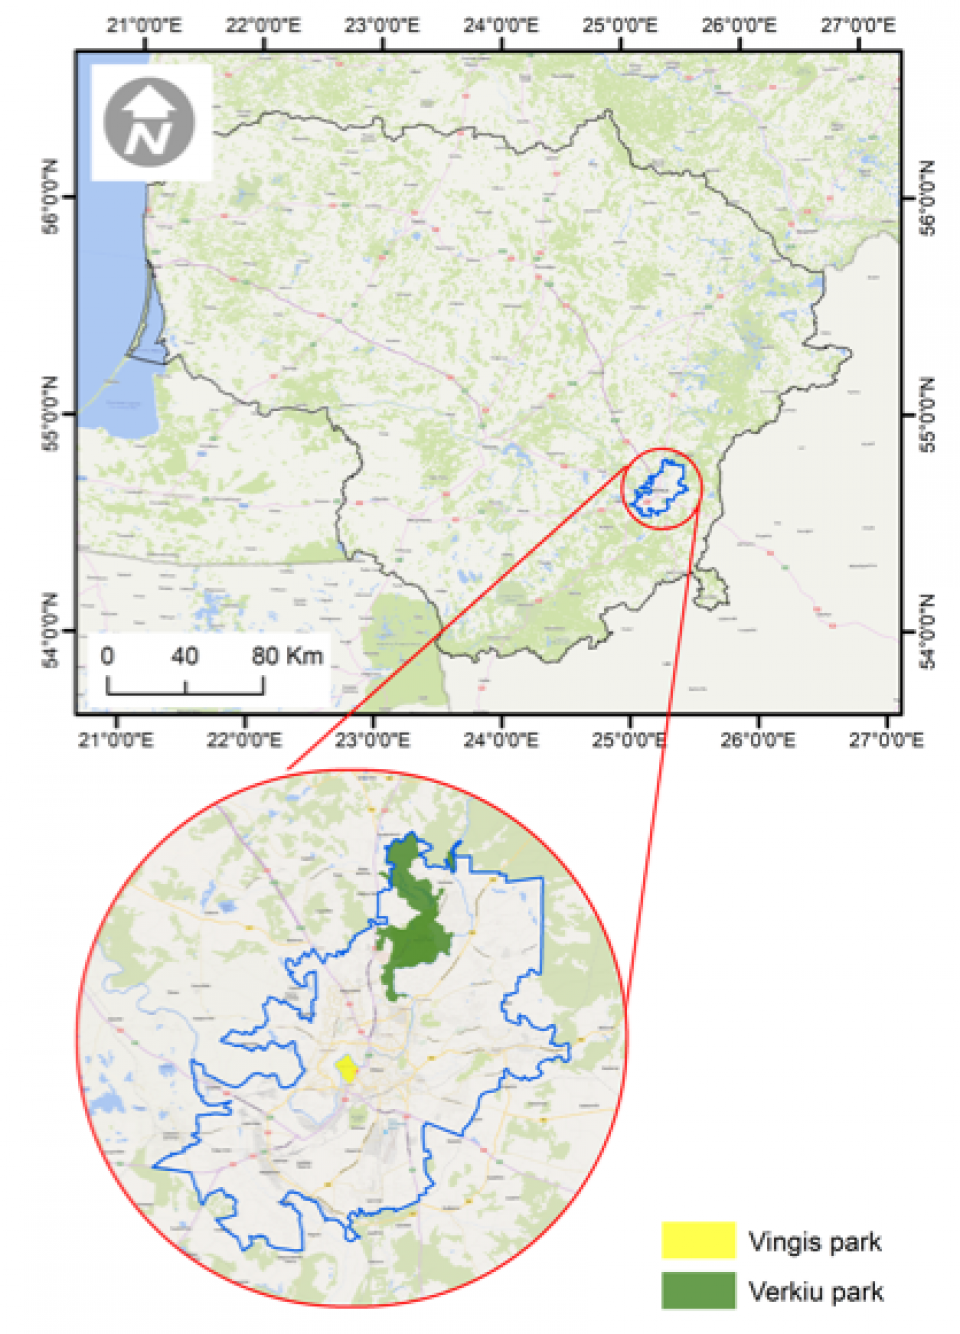 Location of the two UrbanGaia case studies in Vilnius